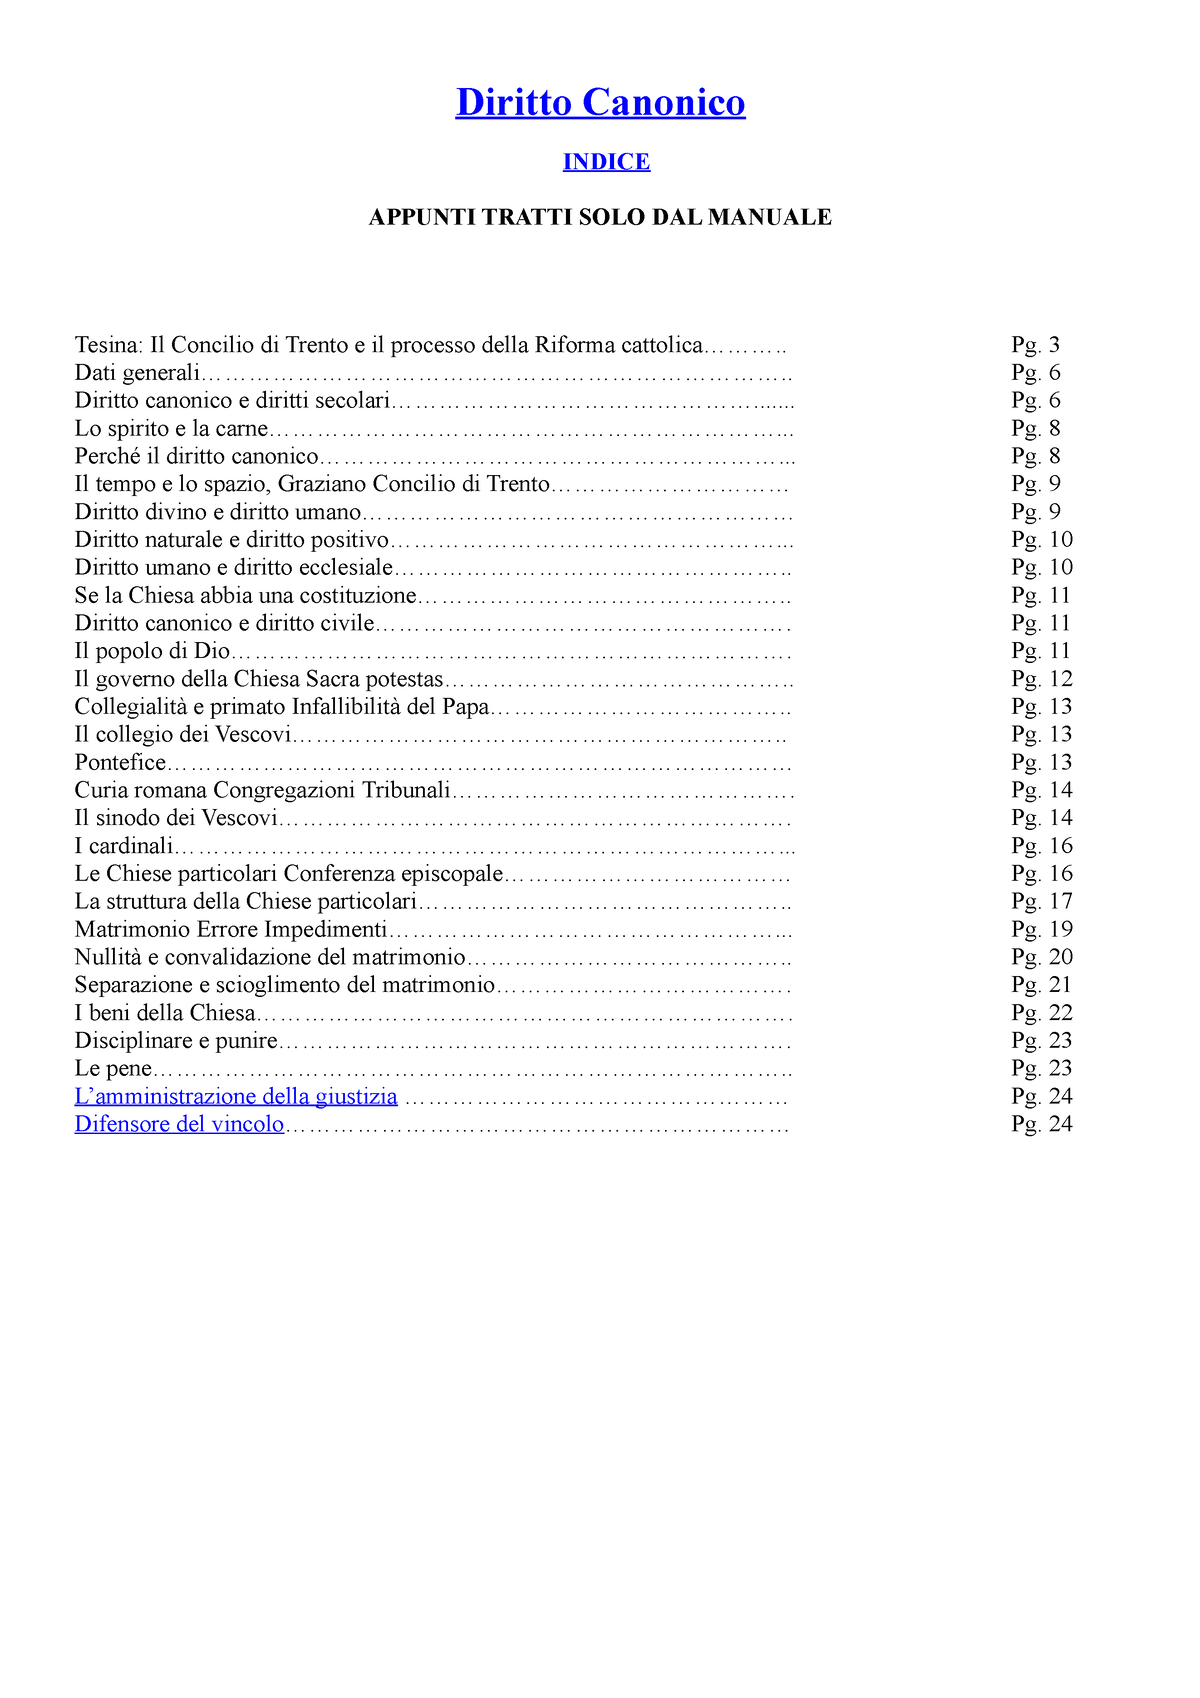 BONI 2014 0211100240 Appunti - Lezioni di diritto canonico - Diritto  Canonico INDICE Tesina: Il - Studocu